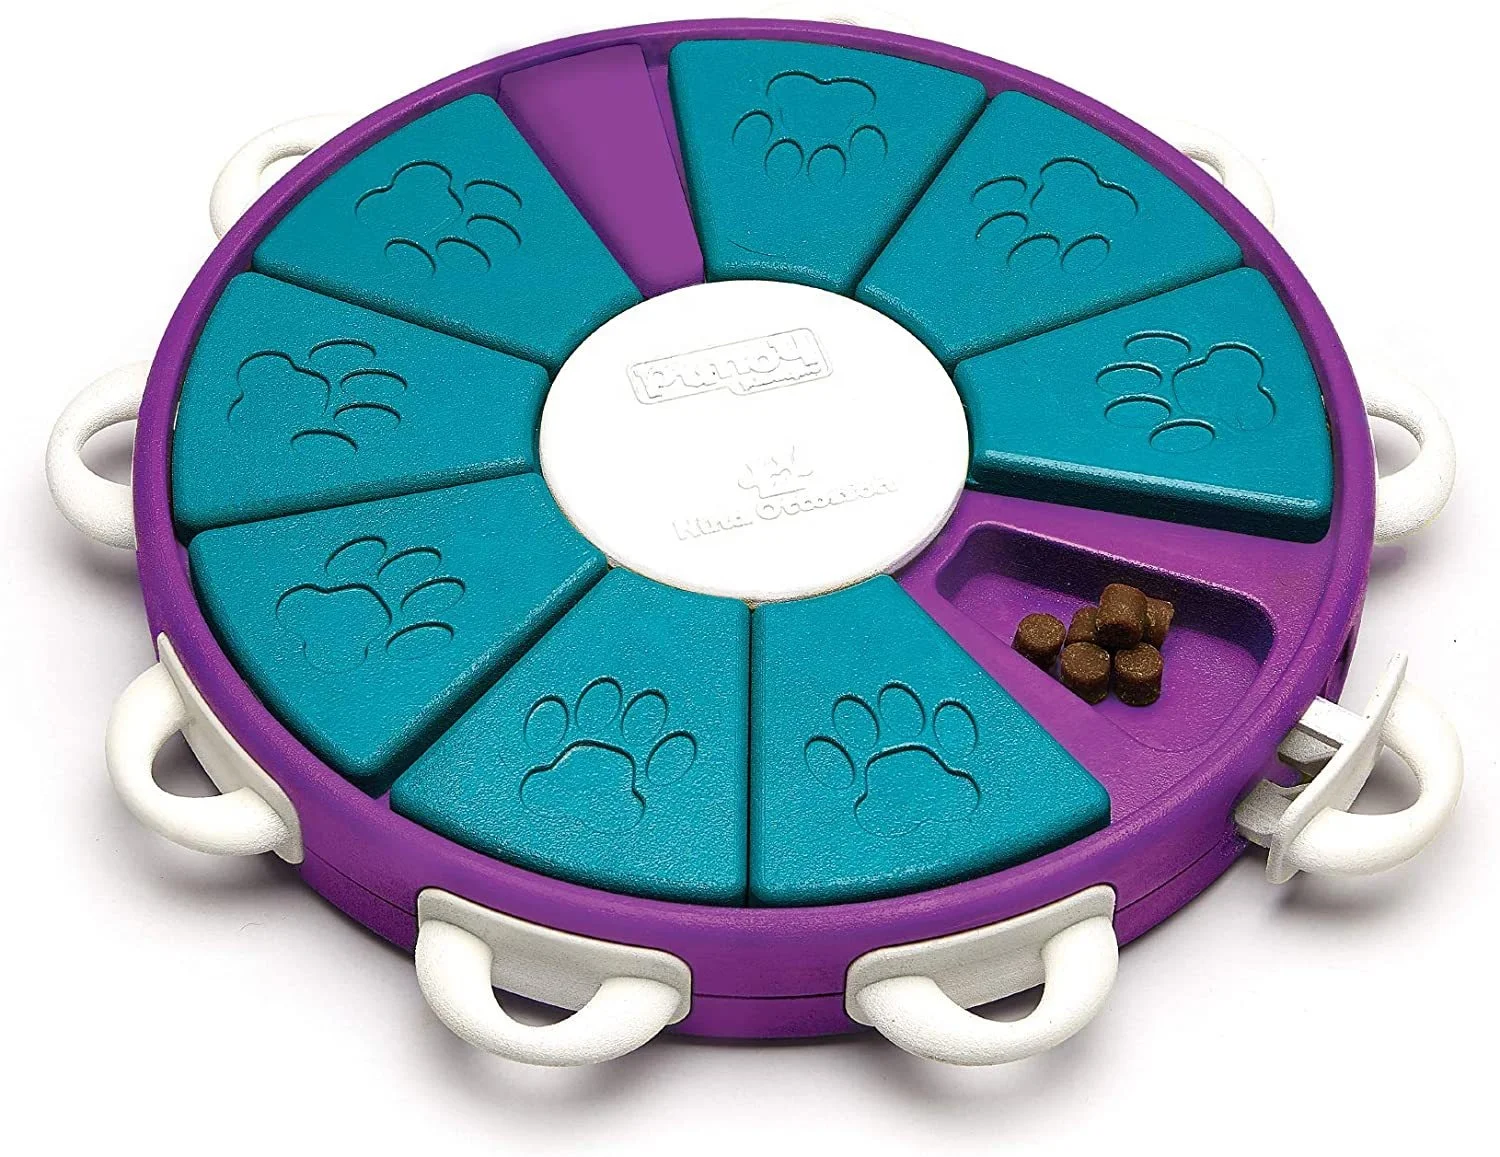 

Wholesale Eco-Friendly Interactive Pet Dog Toys Intelligence IQ Training Dog Puzzle Toy With Bulk, Blue